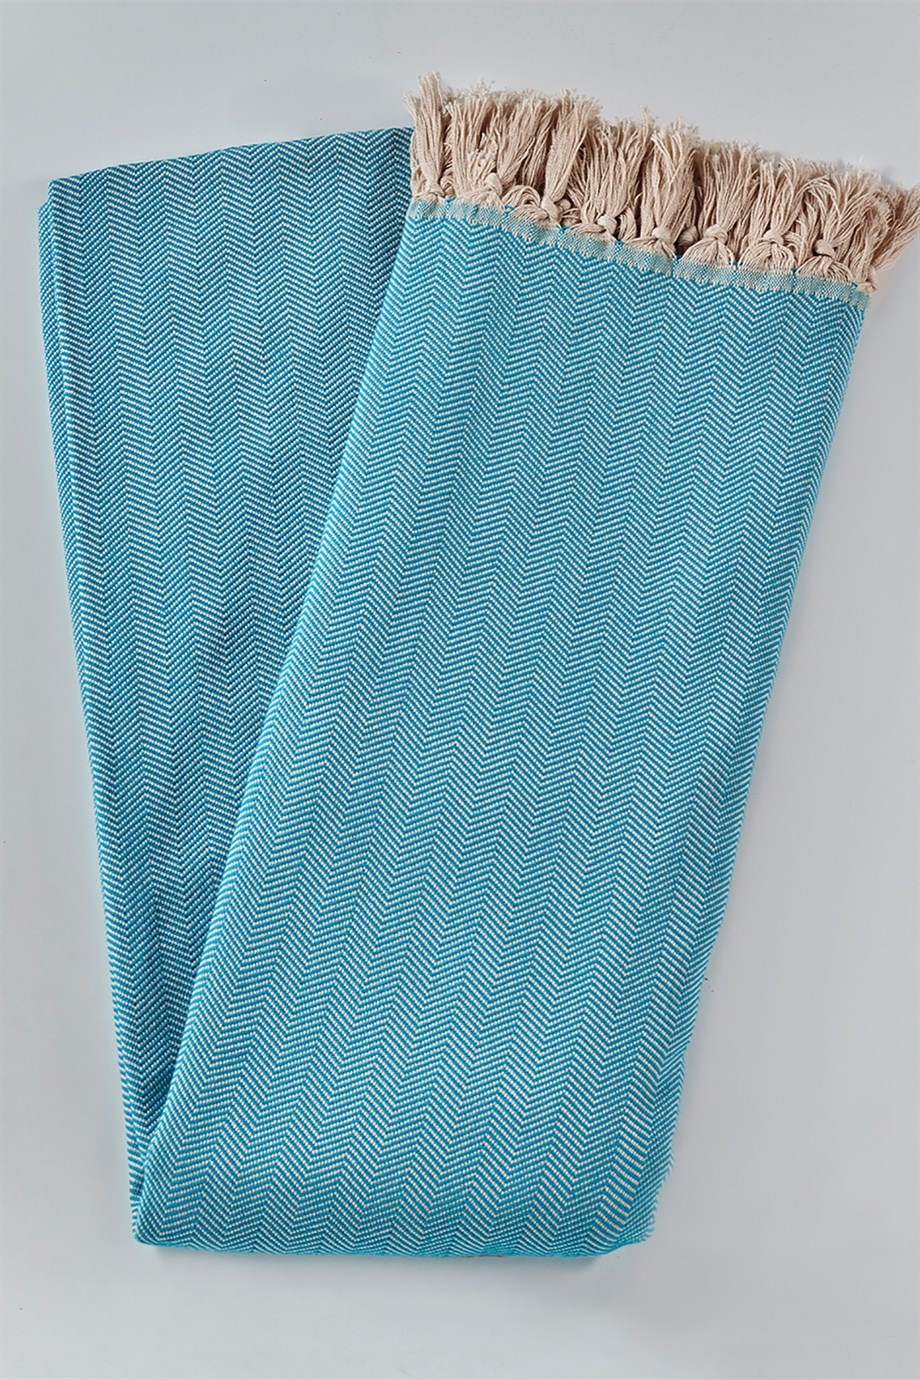 DENIZLI CONCEPT Herringbone Double Turquoise Bedspread